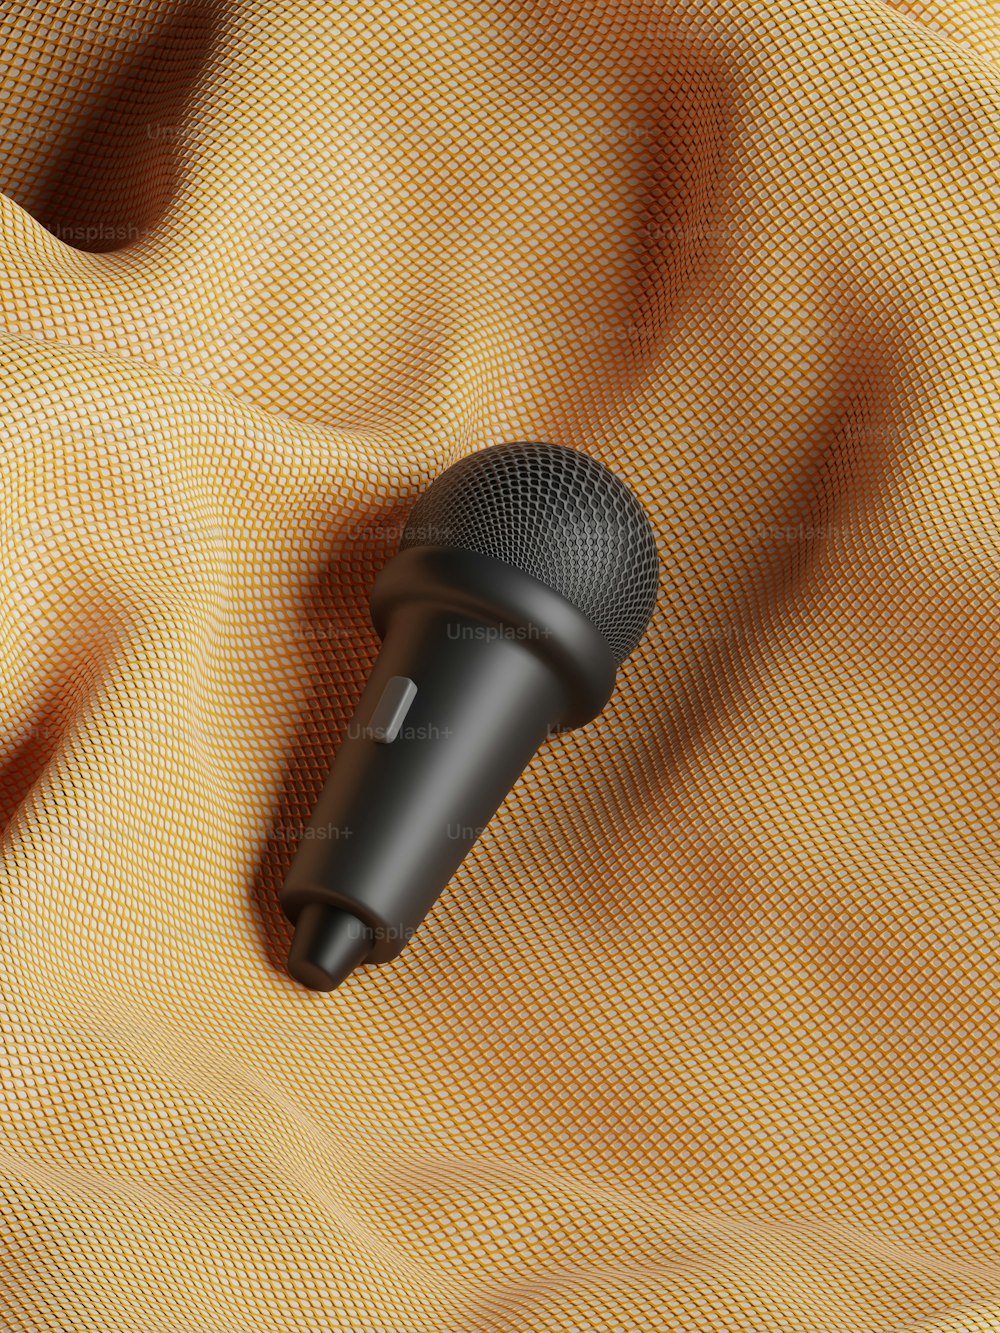 ein schwarzes Mikrofon, das auf einem gelben Tuch sitzt